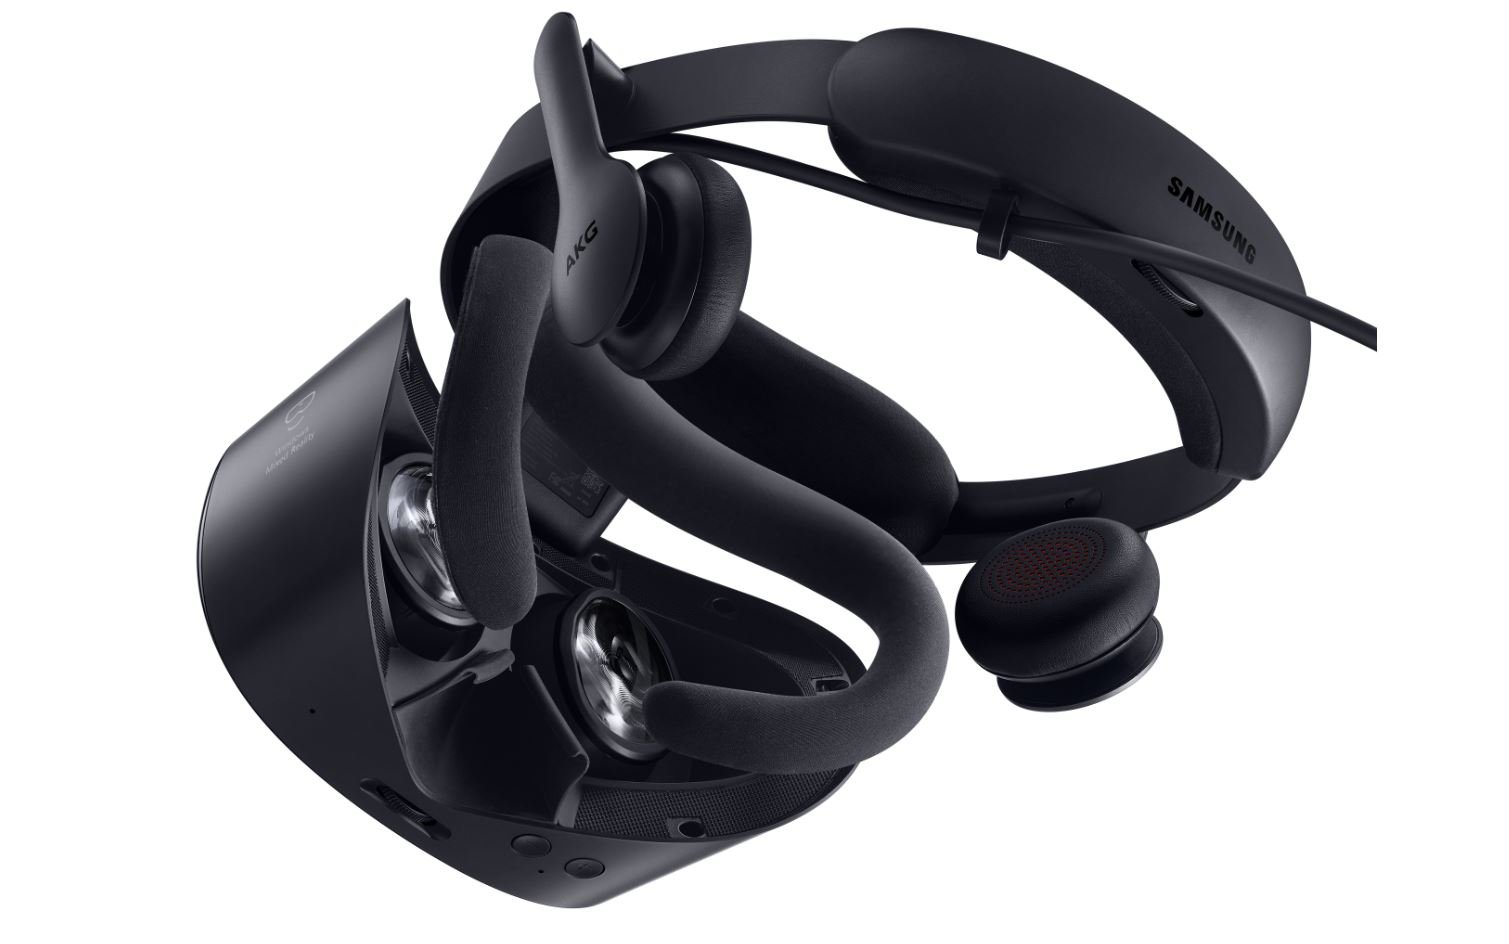 交易提醒：三星 HMD Odyssey+ VR 頭顯現在只需 229 美元